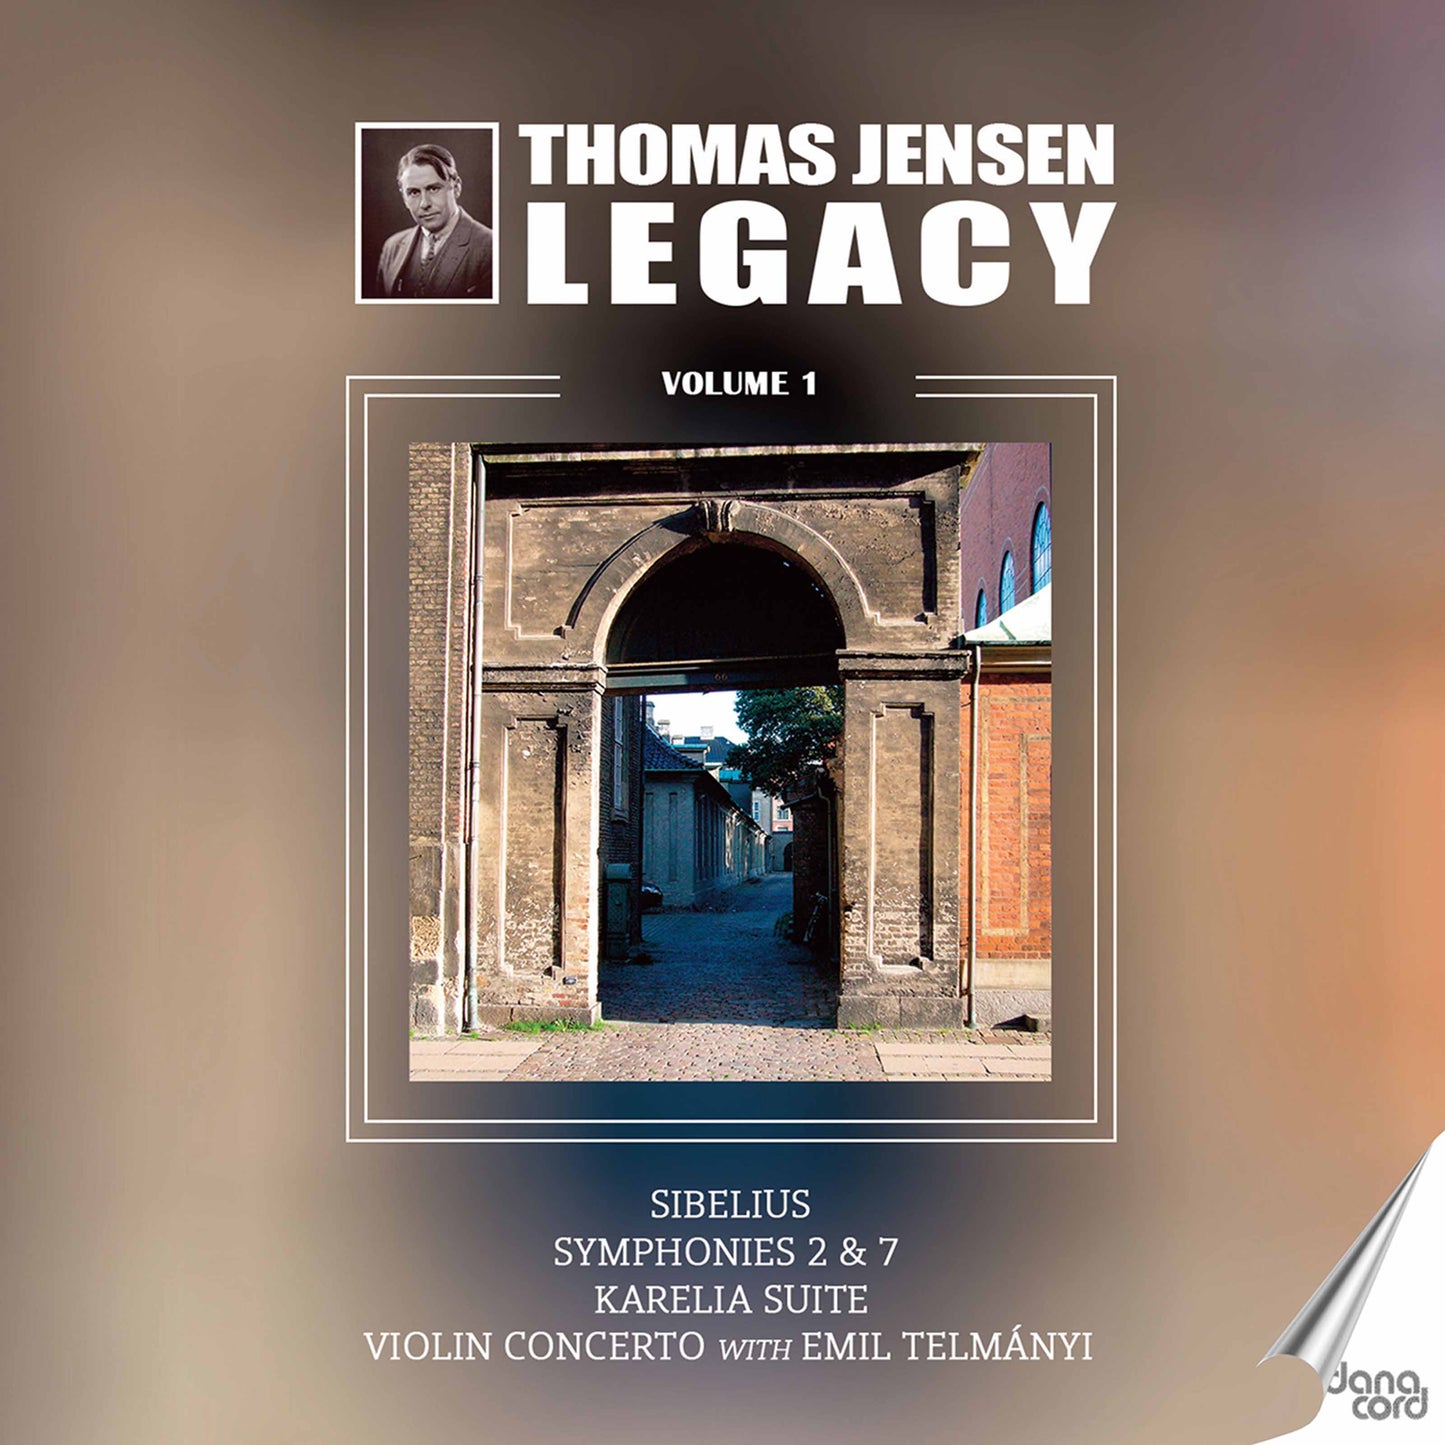 Thomas Jensen Legacy Vol.1